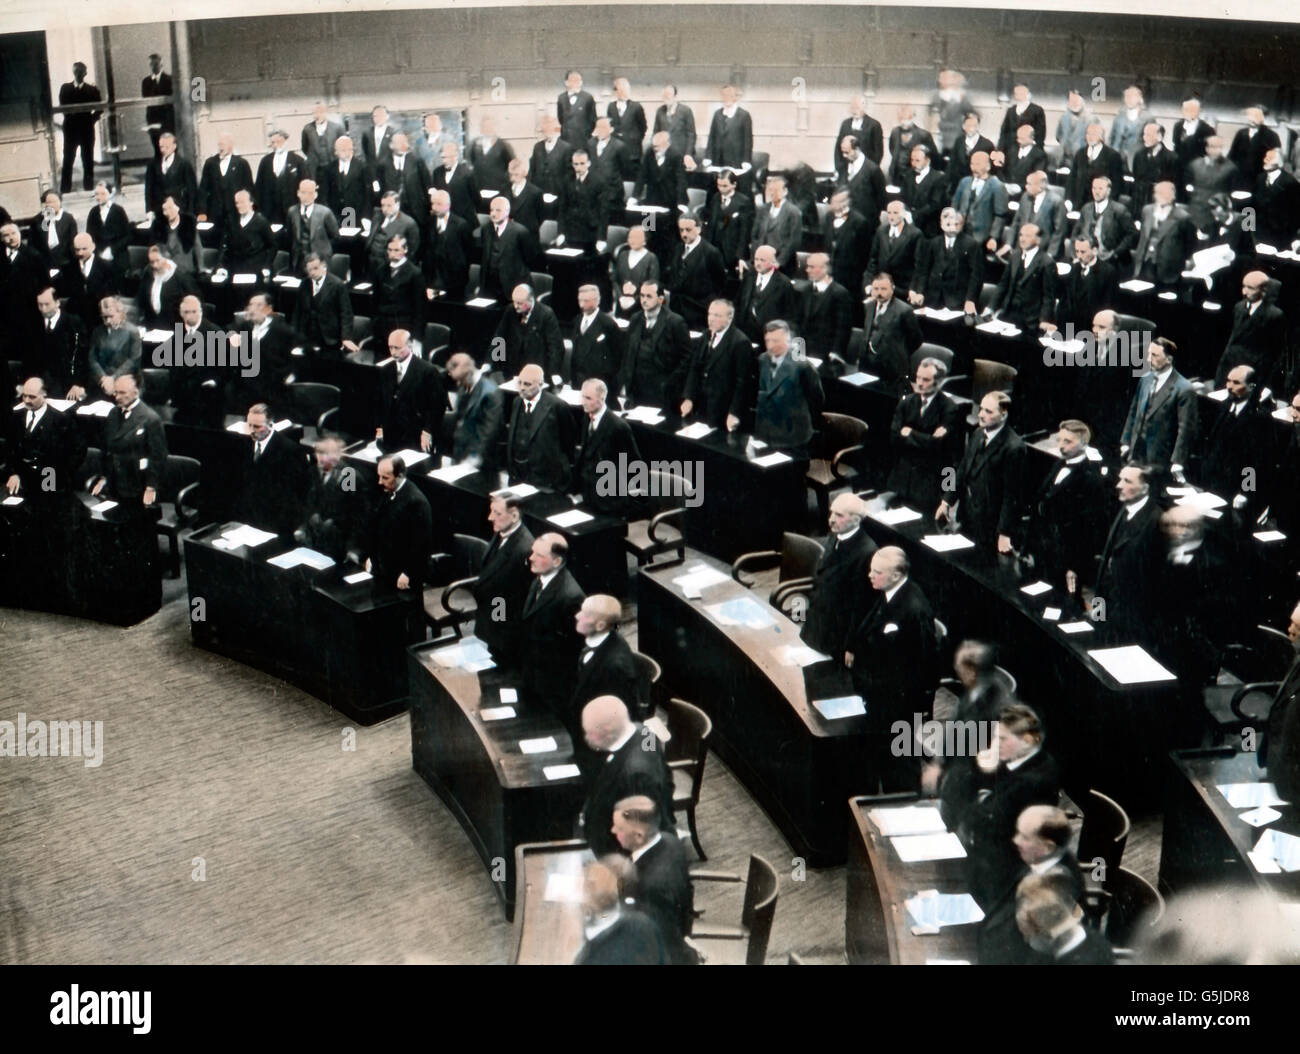 Eine Sitzung im finnischen Parlament, Helsinki, Finnland, 1930er Jahre. Pleanry meeting at the Finnish parliament, Helsinki, Finland 1930s. Stock Photo